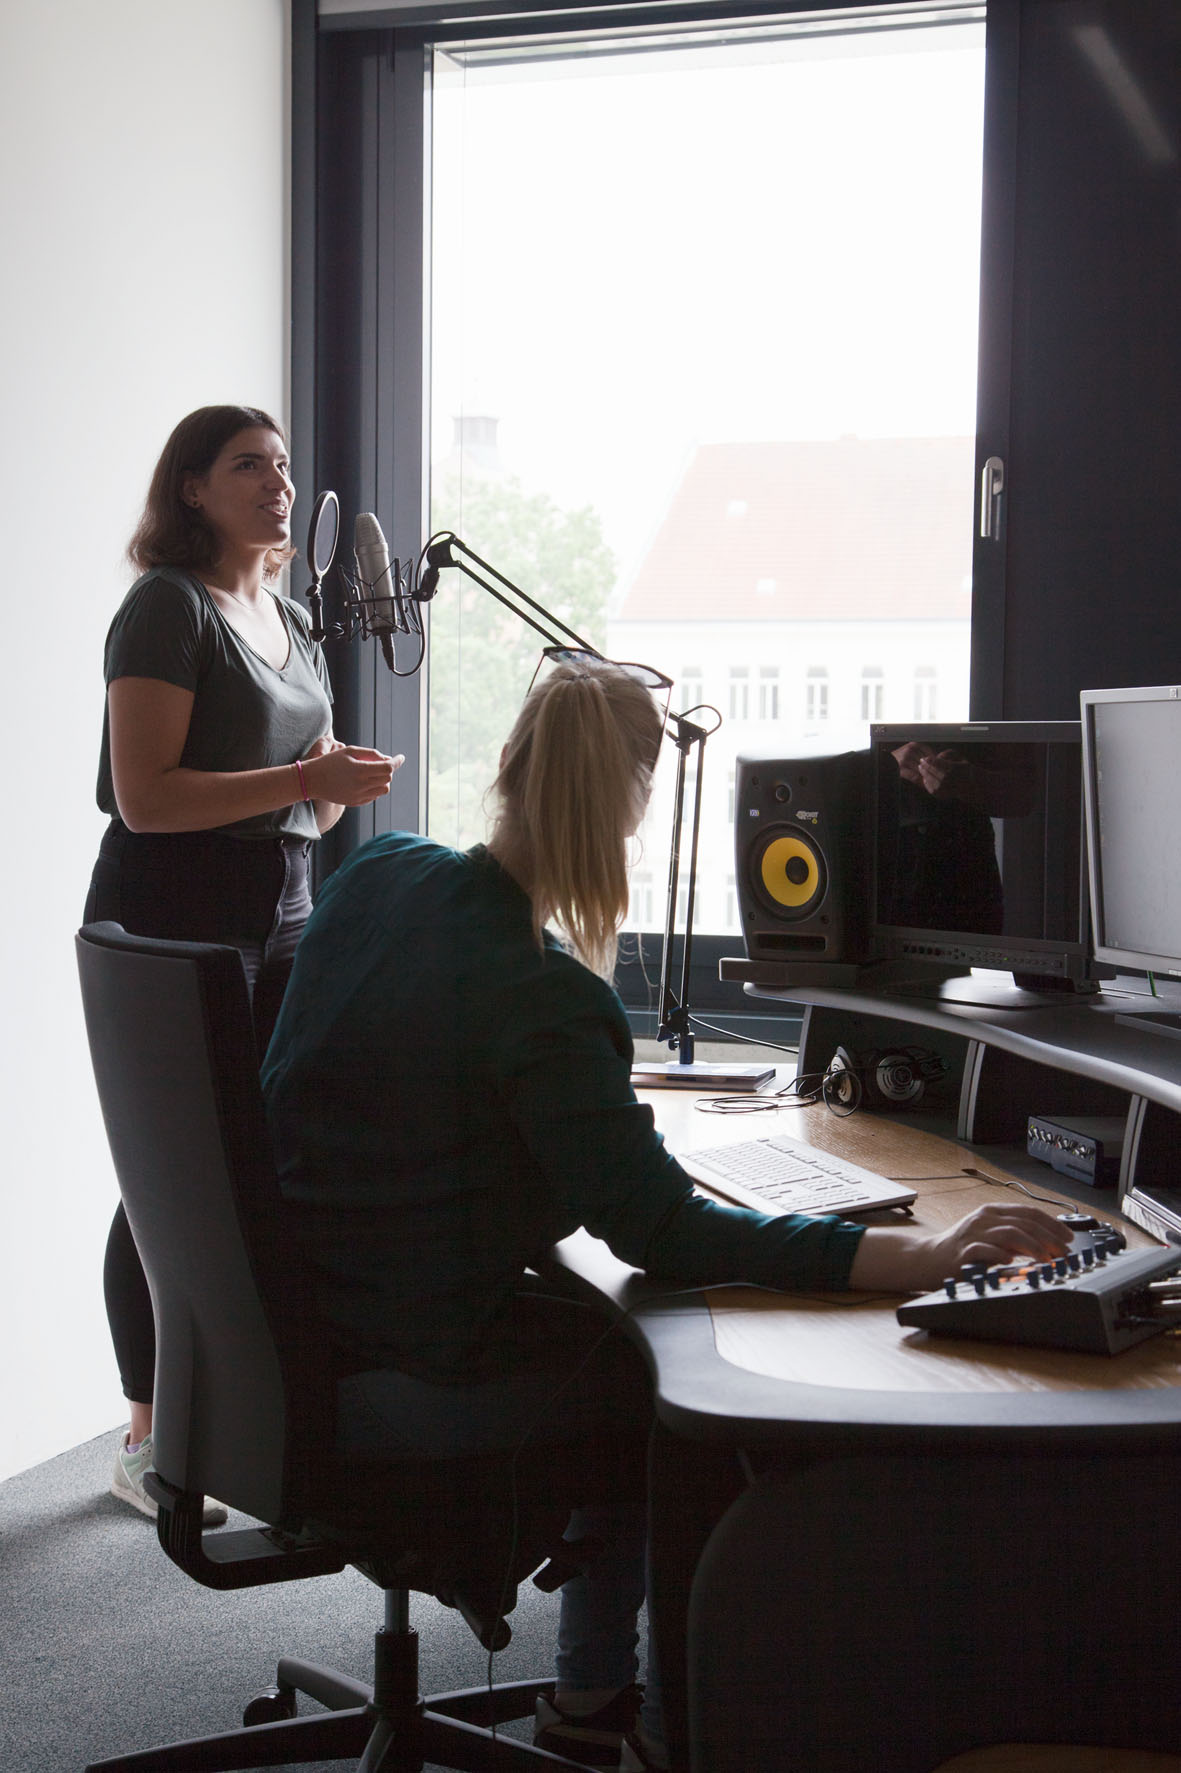 Szene im Aufnahmestudio der HTWK: Eine Studentin spricht in ein Mikrofon während eine andere Studentin, die am Schreibtisch sitzt, die Regler eines Mischpults betätigt.